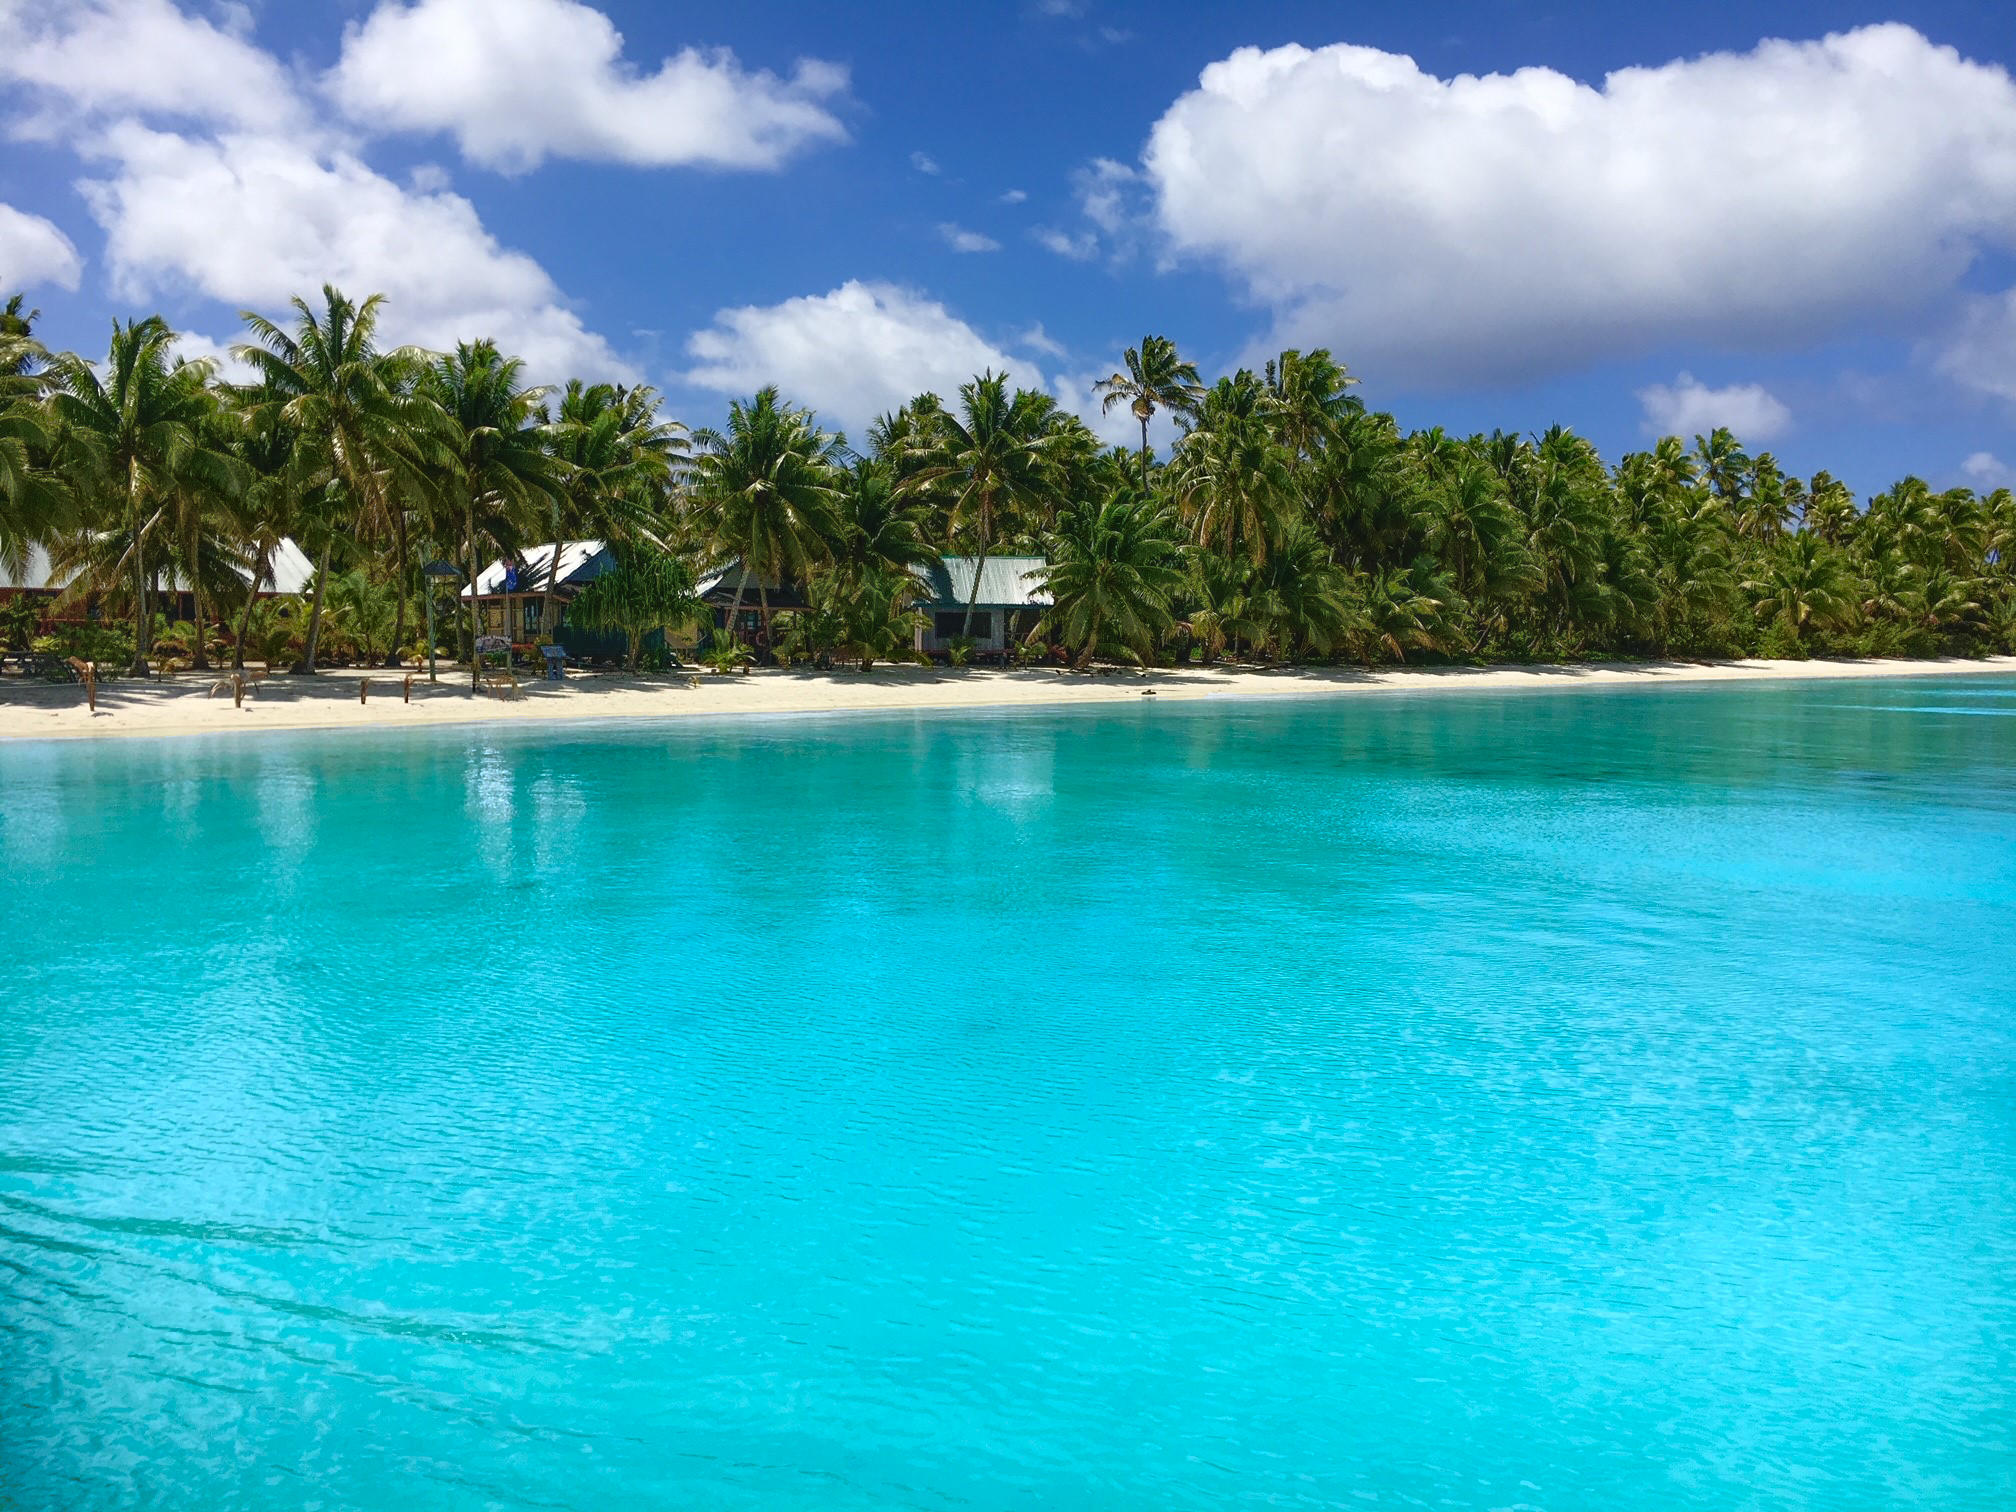 Das Bild zeigt den Strand von Aitutaki vom Meer aus betrachtet. Im Vordergrund ist das Wasser. Weiter hinten ist der Strand mit einigen Hütten und einem Palmenwald.